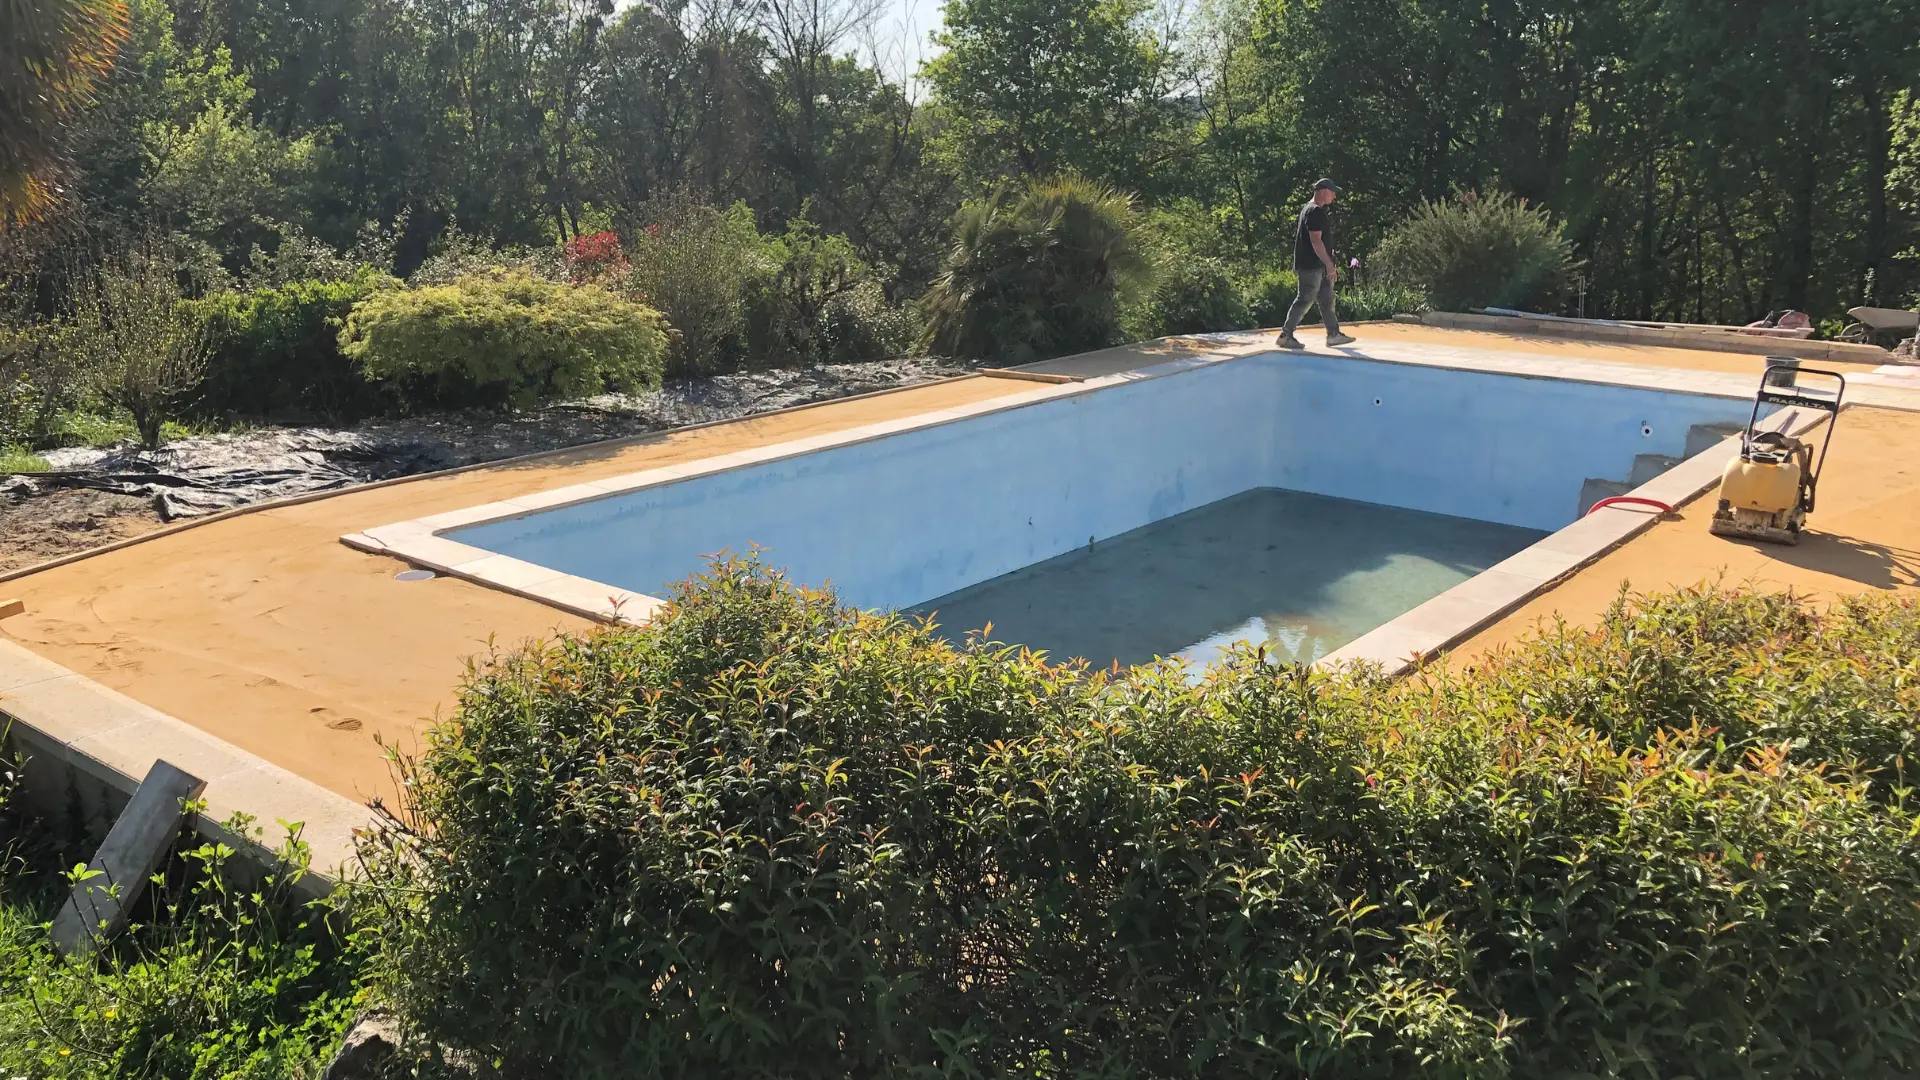 Rénovation d'une terrasse en extérieur autour d'une piscine par Naturéo, expert en aménagement extérieur dans le grand Bergeracois.